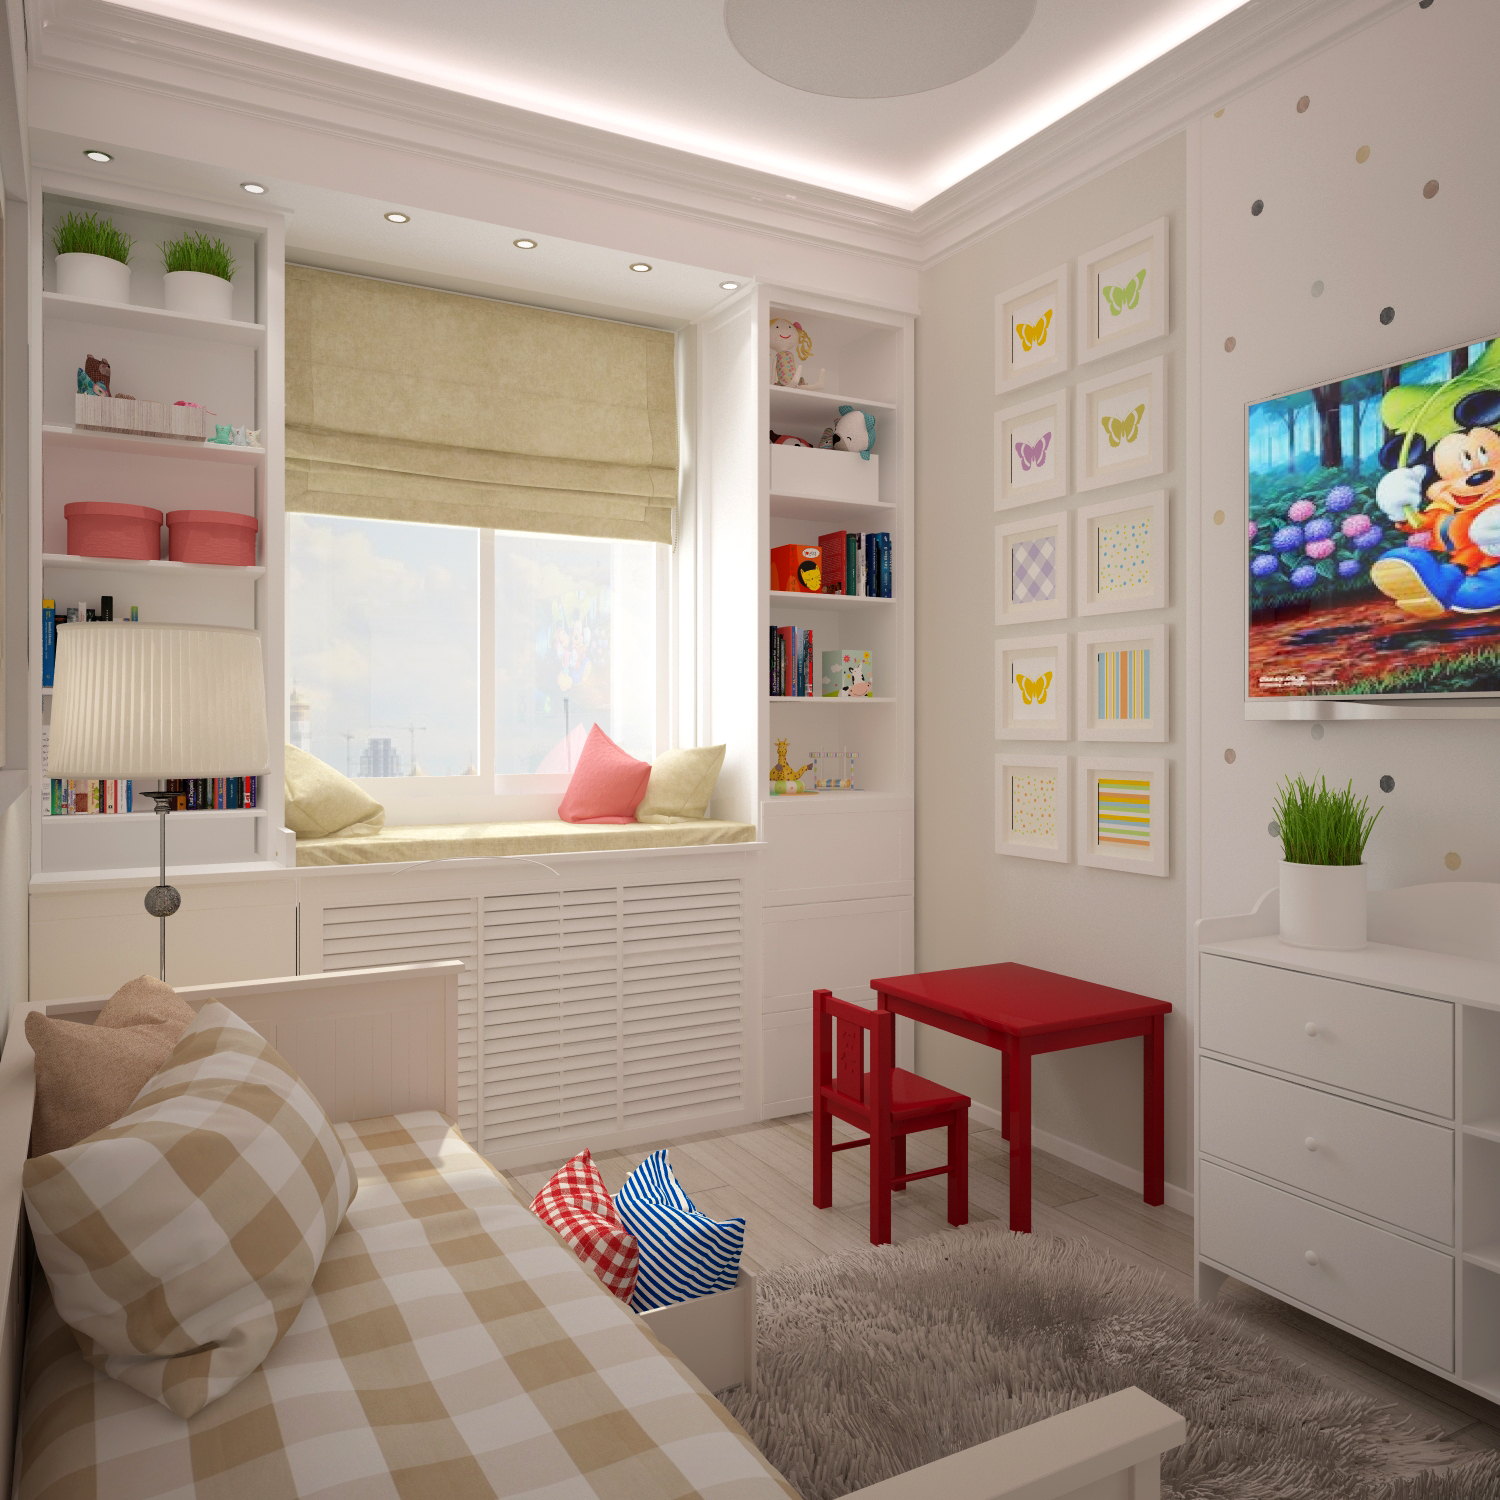 Детские комнаты 12 кв м » Картинки и фотографии дизайна квартир, домов .